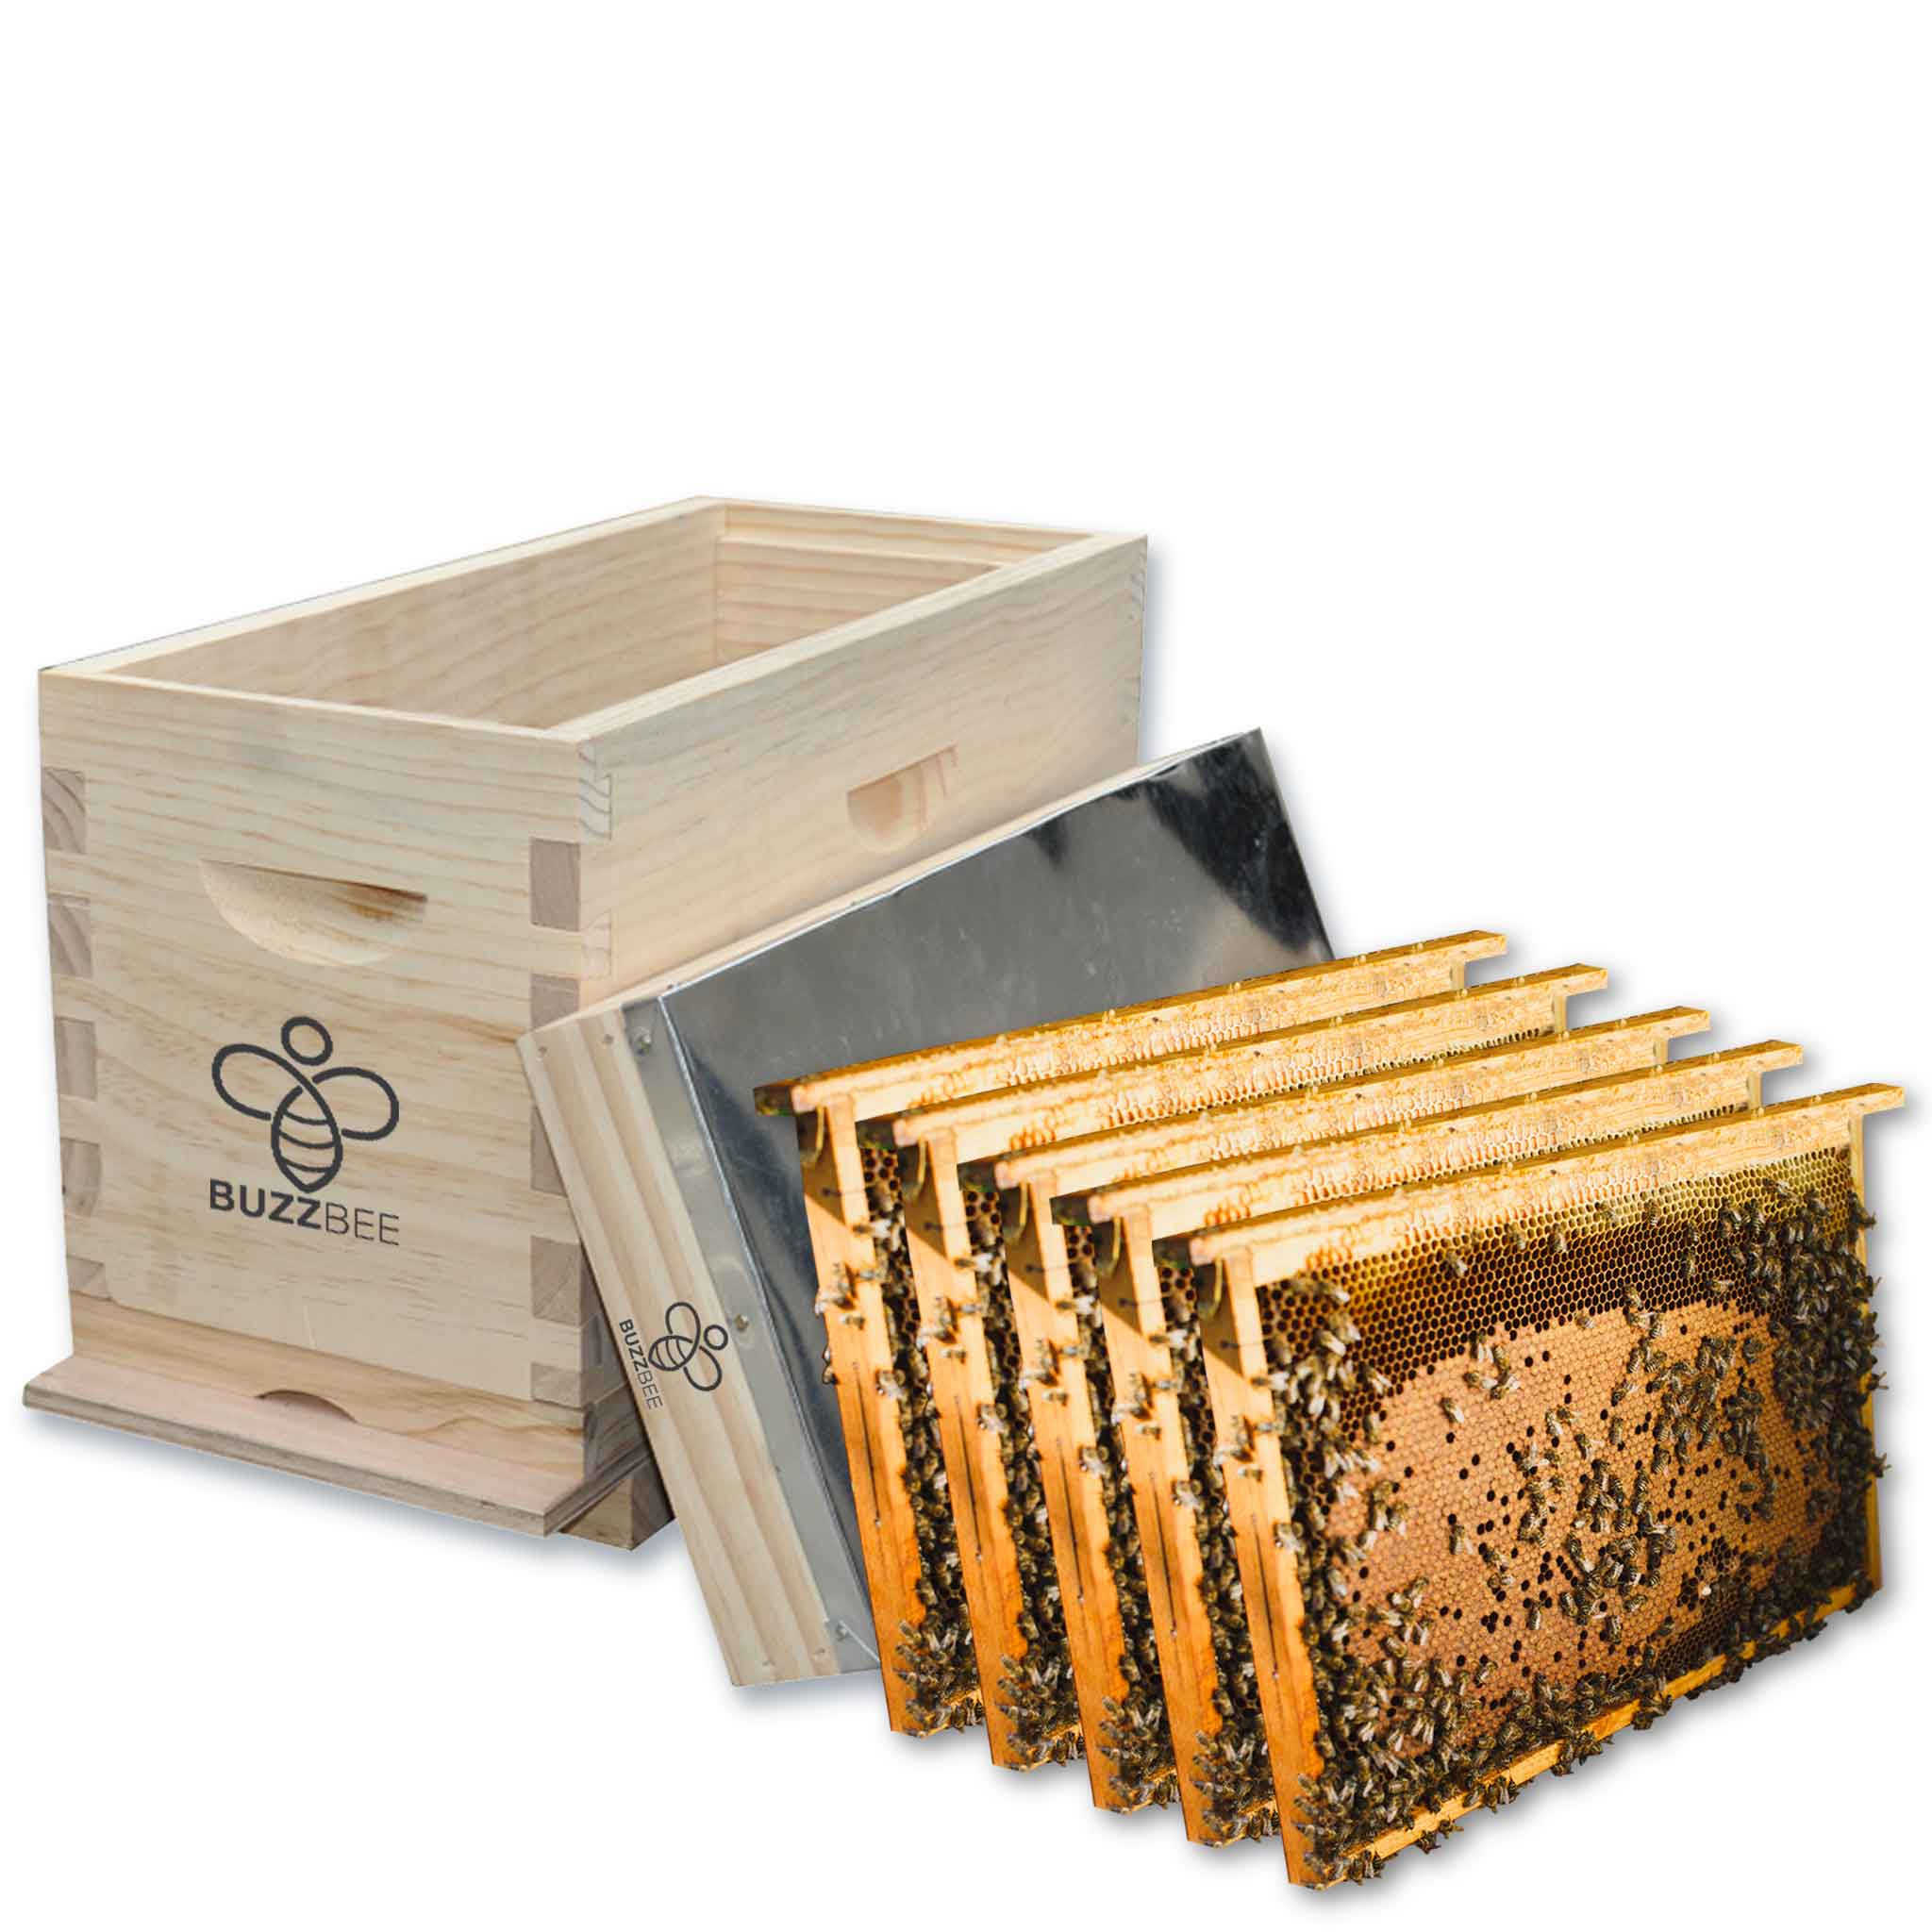 Buzzbee 5 Frame Honey bee wooden NUC beehive